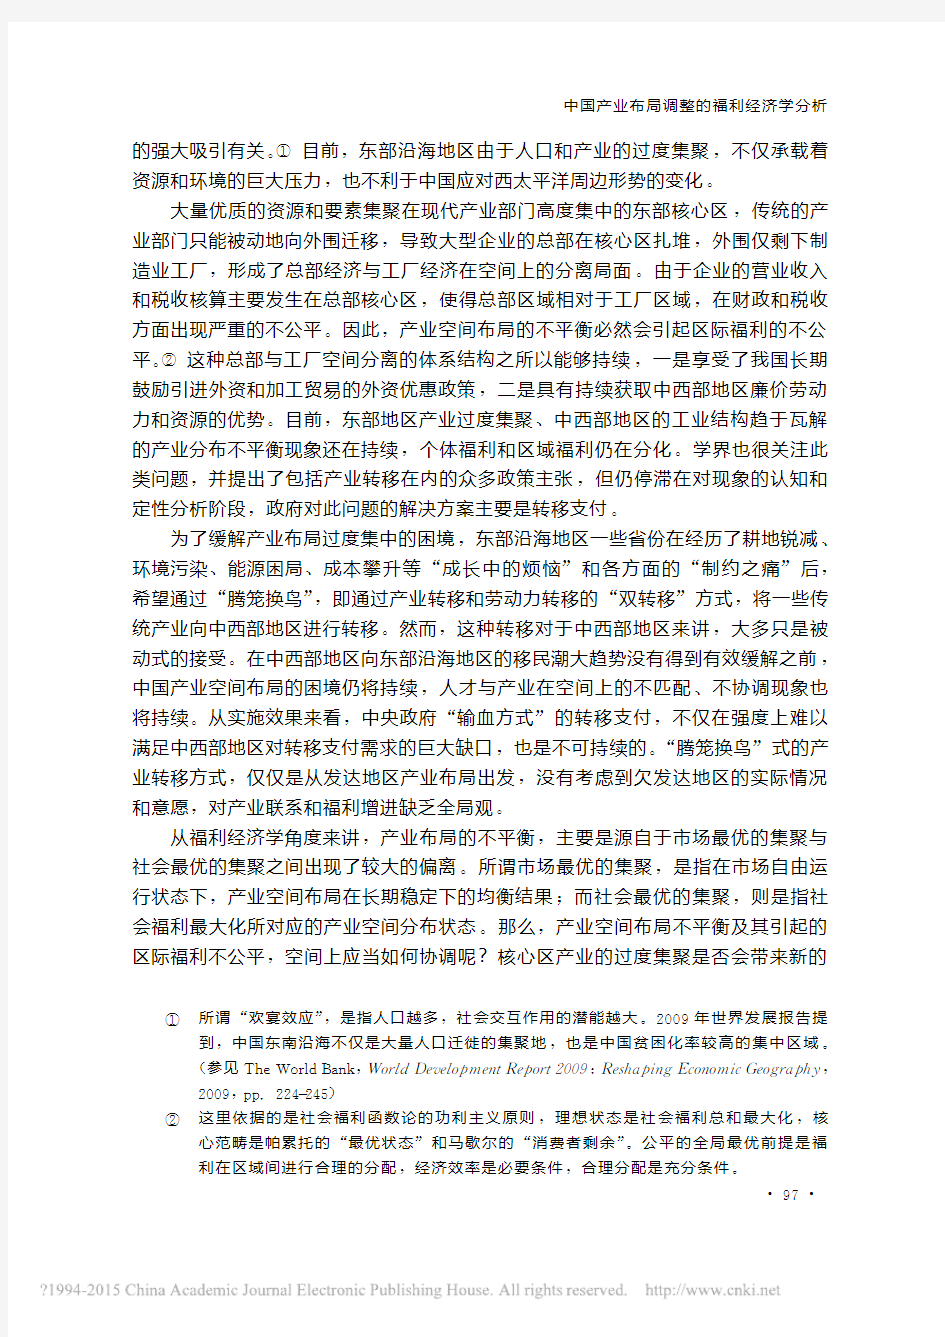 中国产业布局调整的福利经济学分析_吴福象